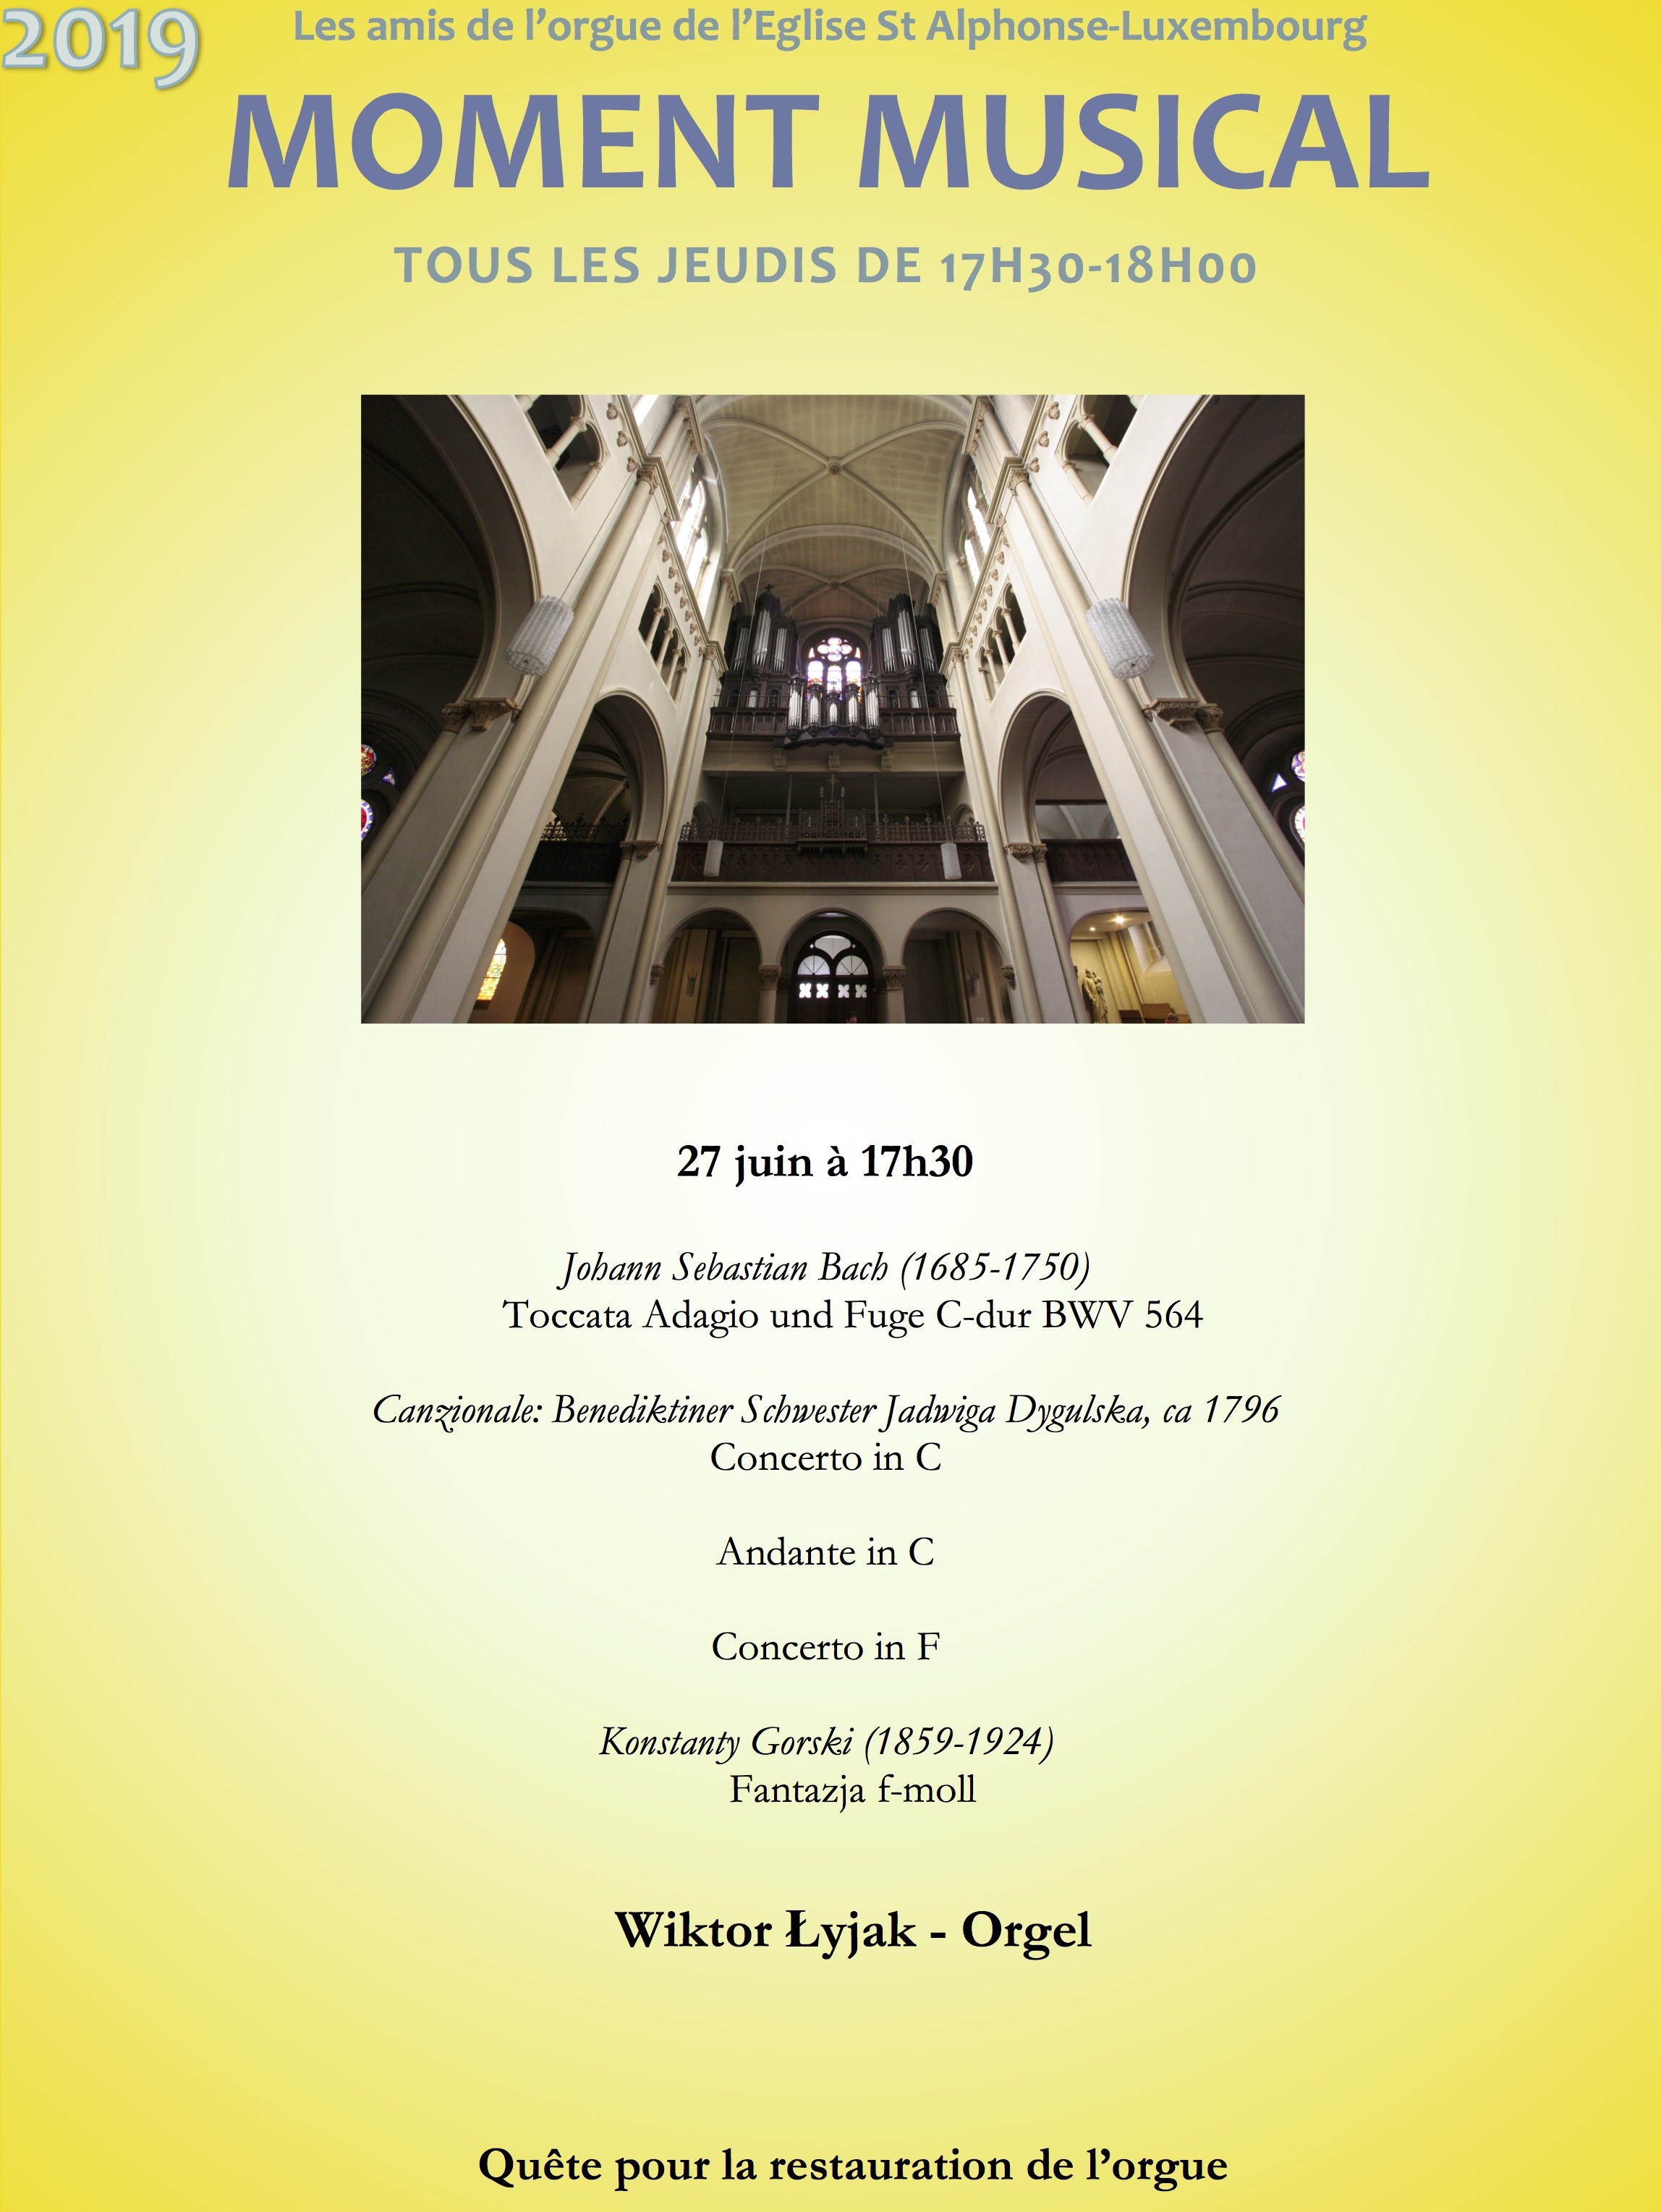 Koncert polskiego organisty w kościele St. Alphonse w najbliższy czwartek